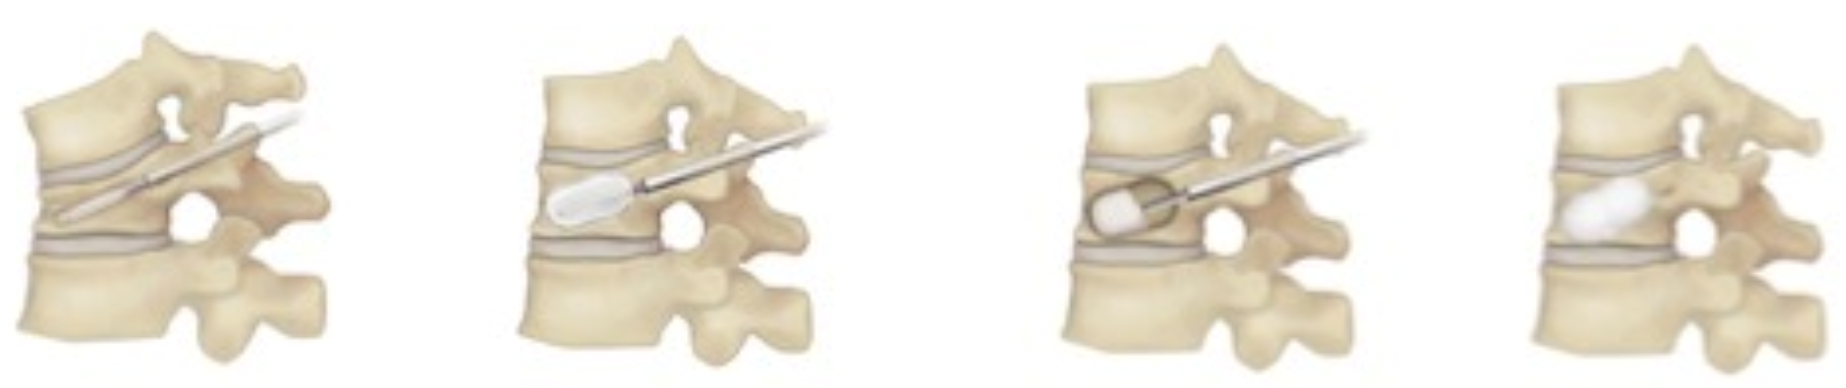 骨粗鬆症性椎体骨折（圧迫骨折）に対するバルーン椎体形成術